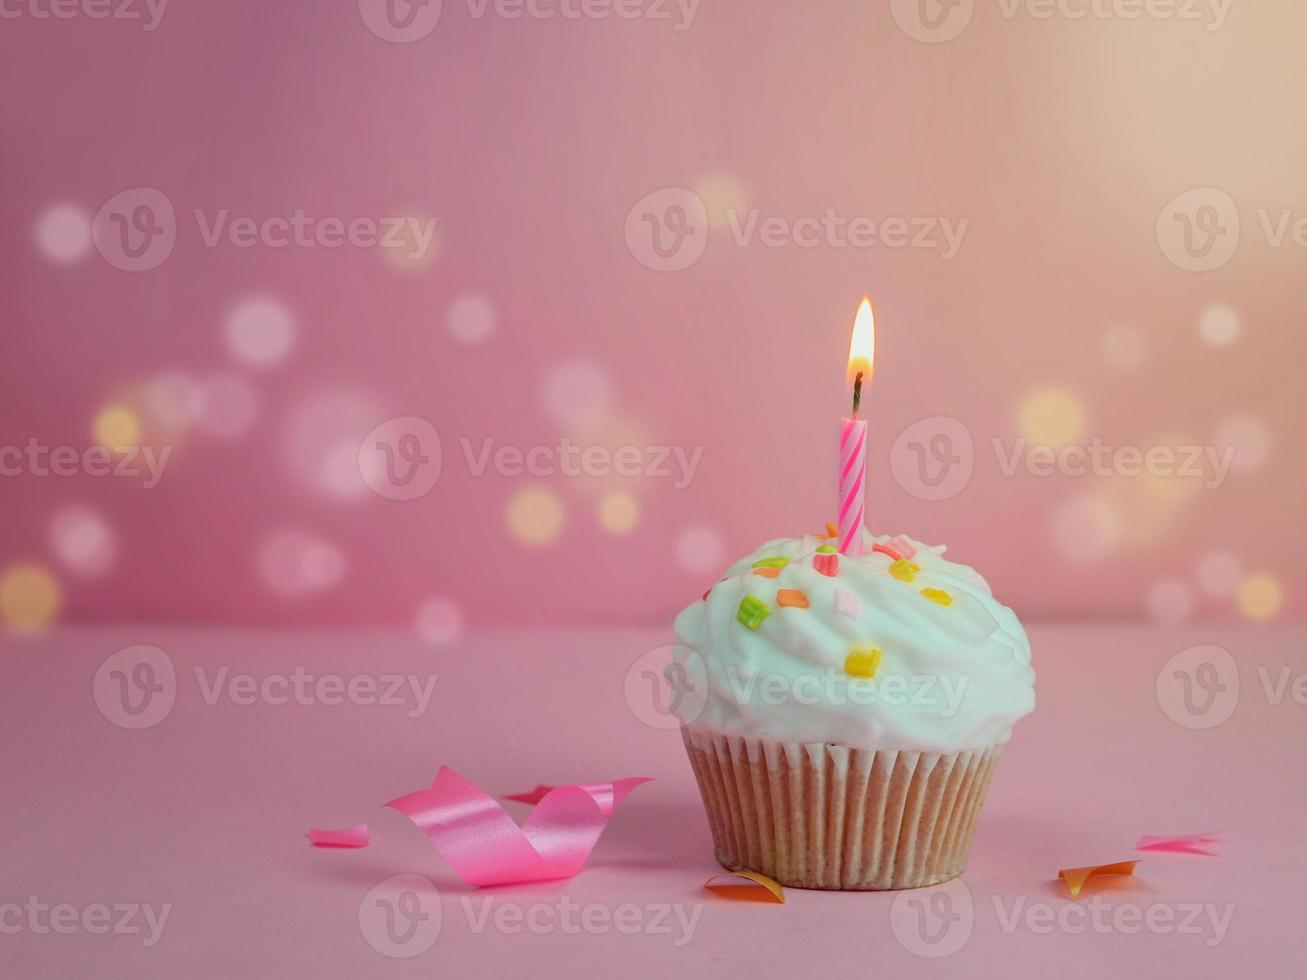 grattis på födelsedagen cupcake och rosett ljus på rosa bakgrund med kopia utrymme. foto